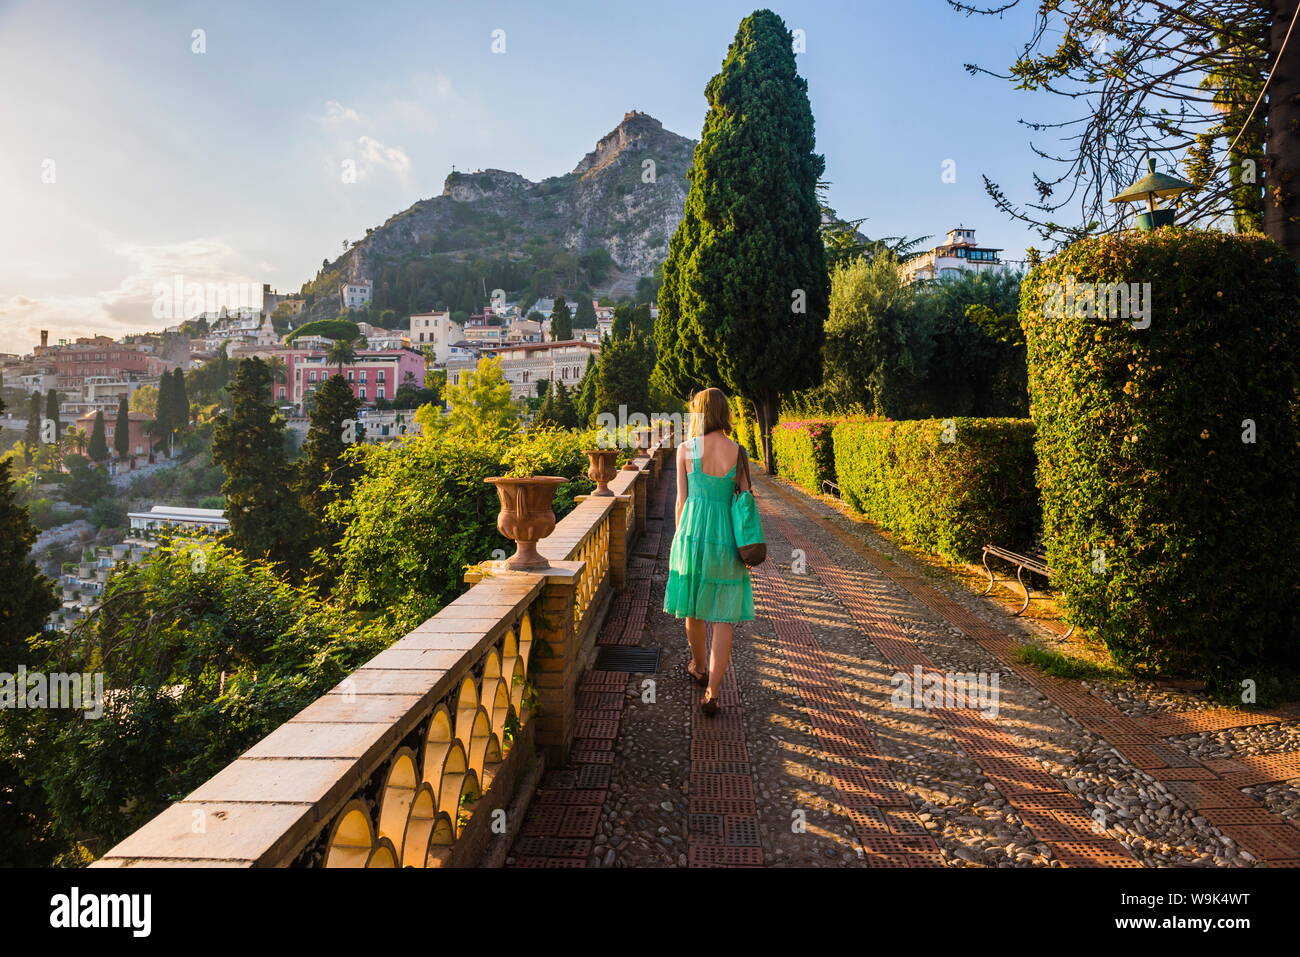 Paseos turísticos alrededor de los jardines públicos de Taormina, Taormina, Sicilia, Italia, Europa Foto de stock